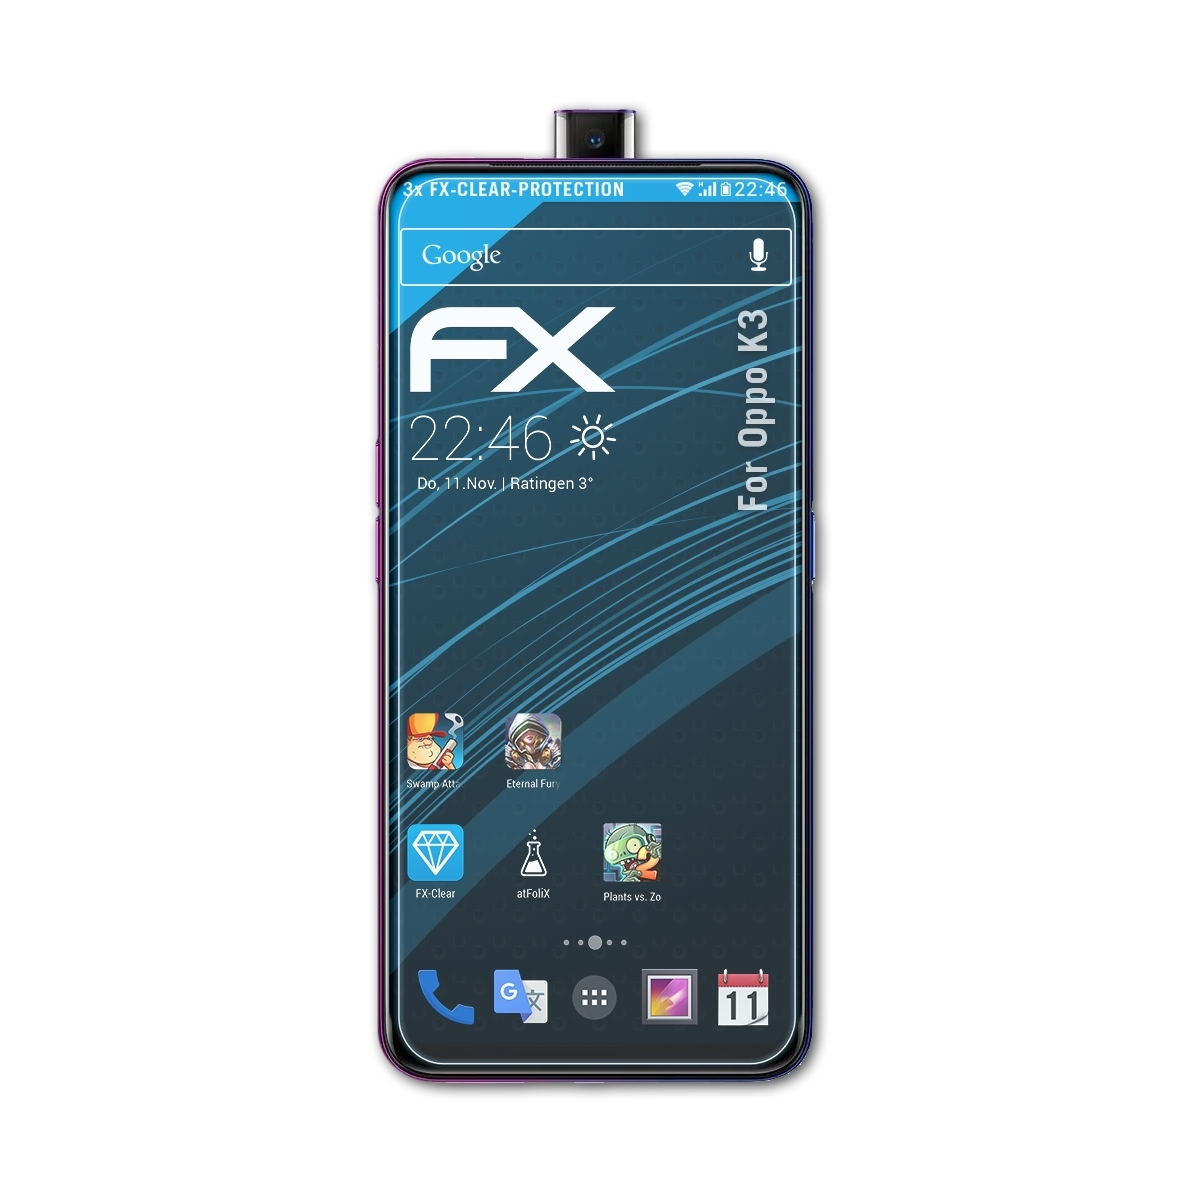 Oppo ATFOLIX 3x Displayschutz(für FX-Clear K3)